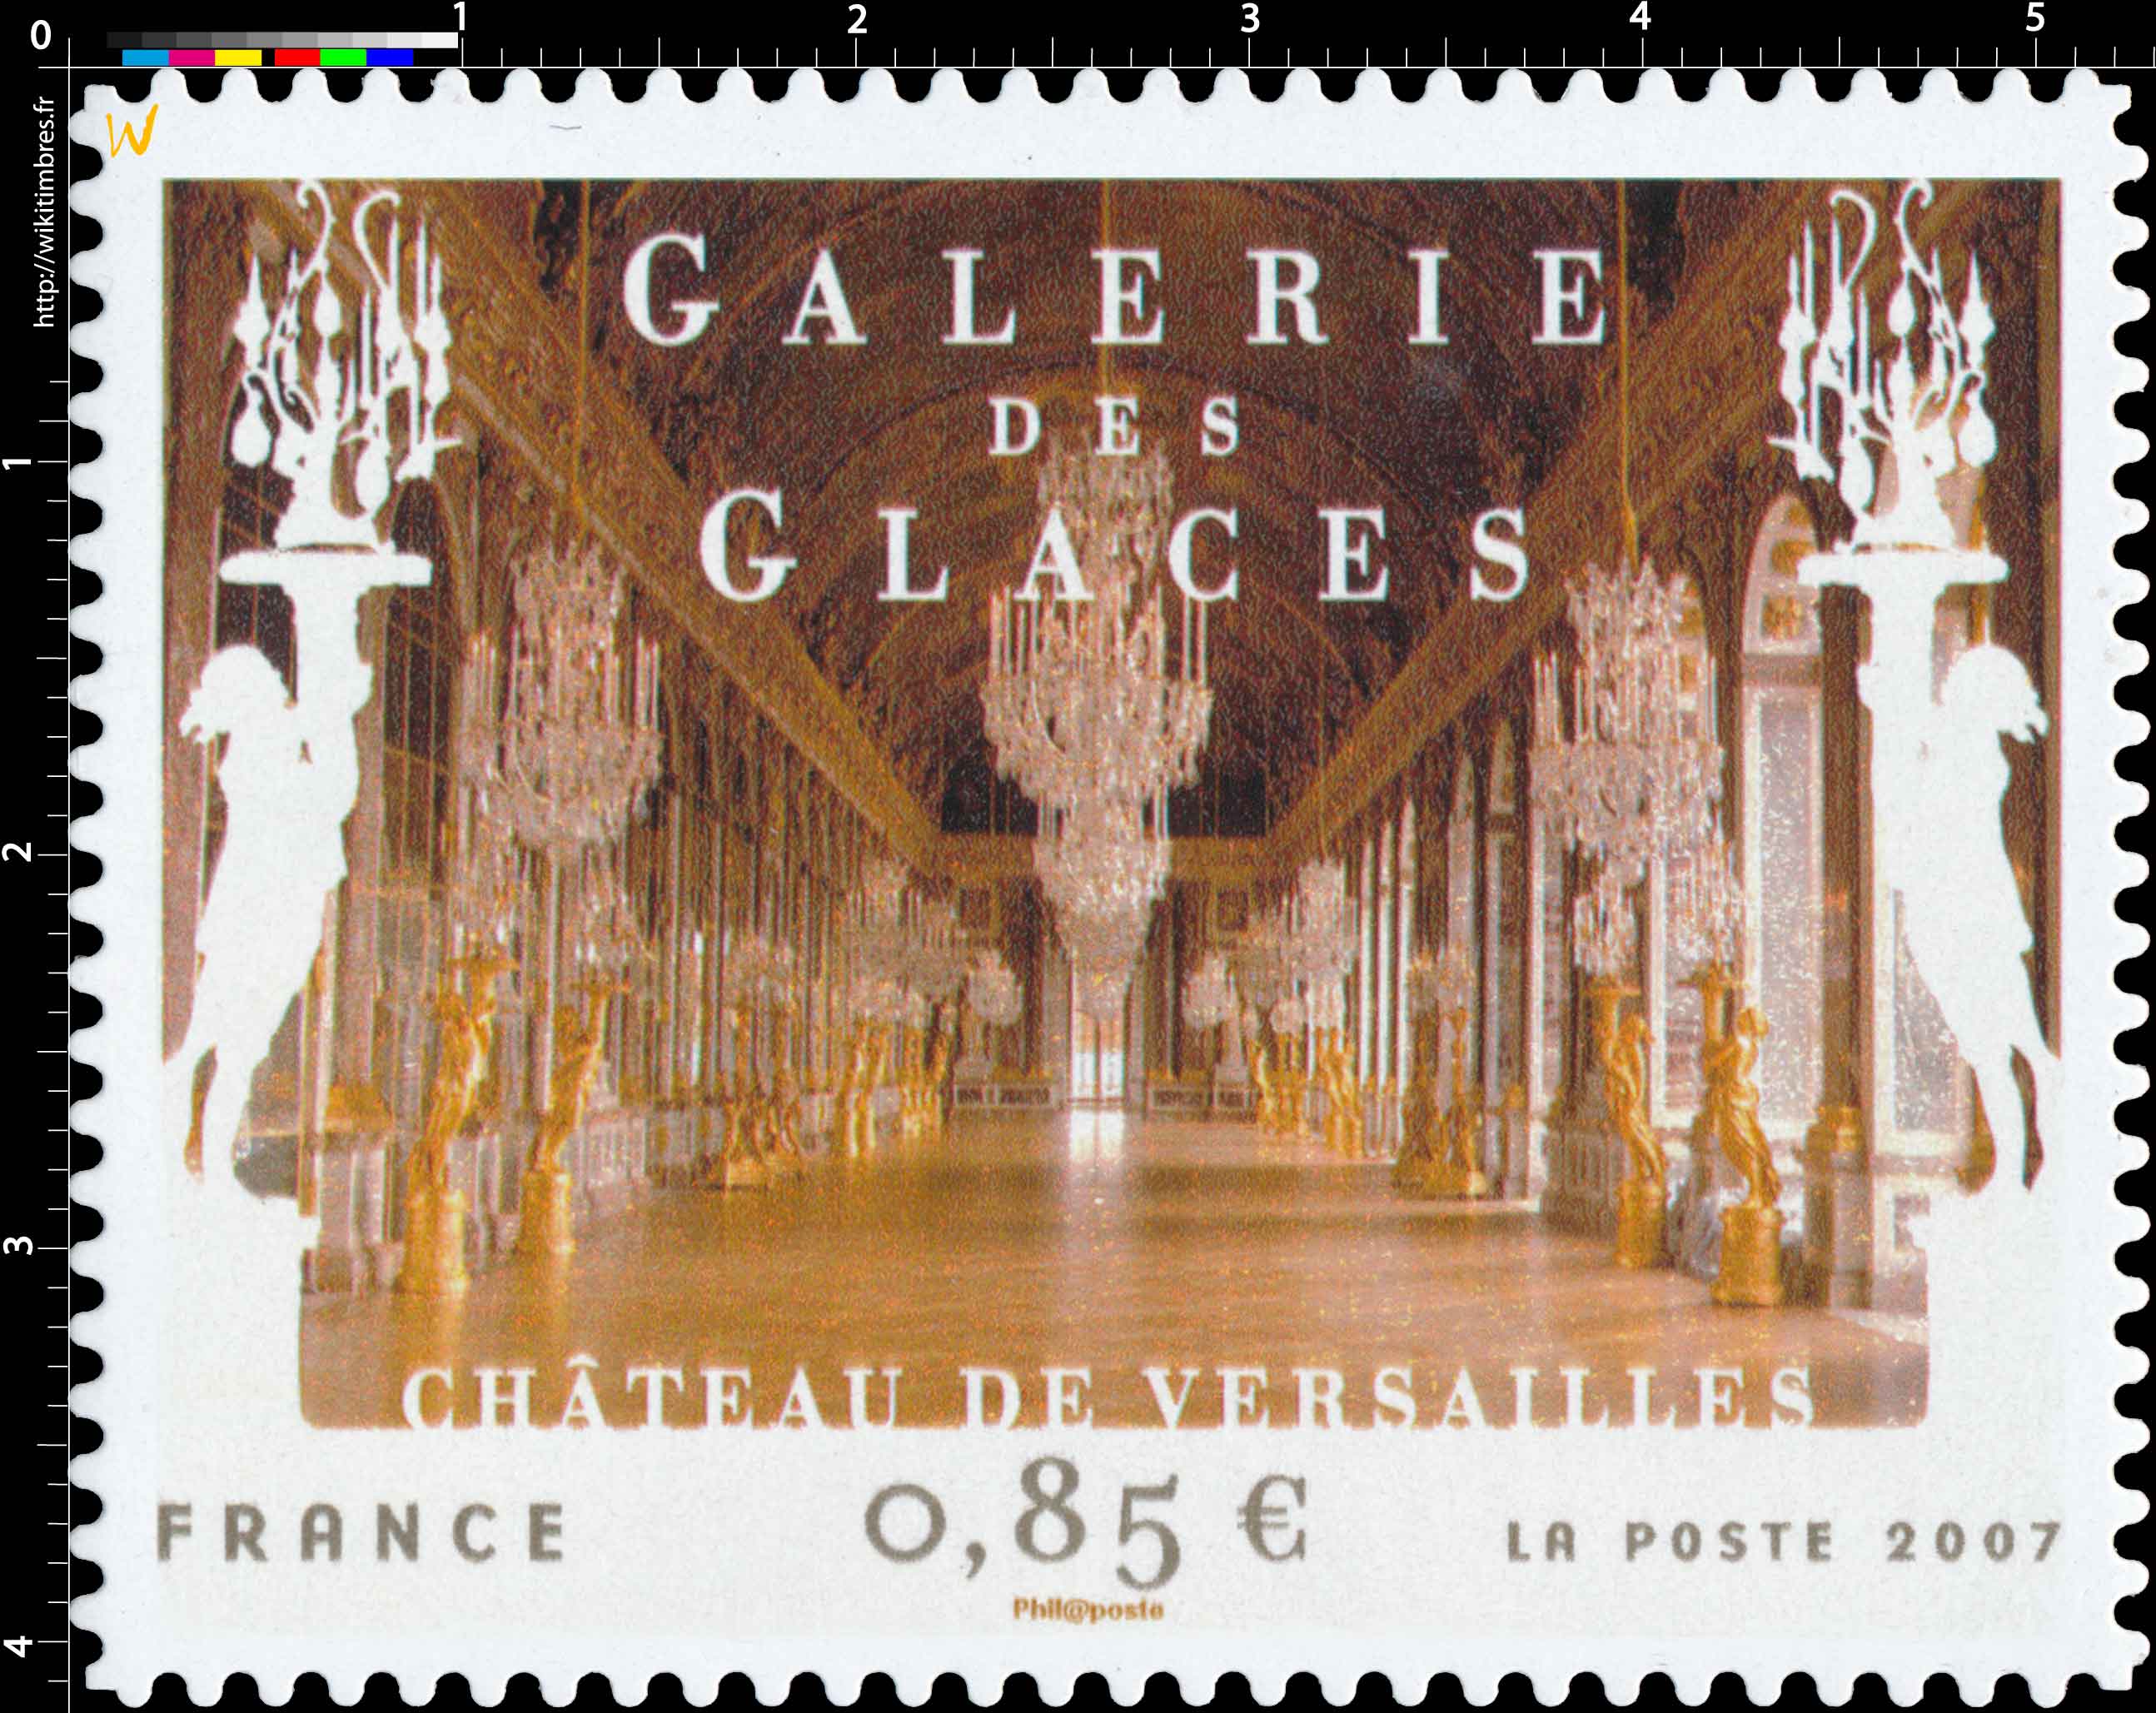 2007 GALERIE DES GLACES CHÂTEAU DE VERSAILLES